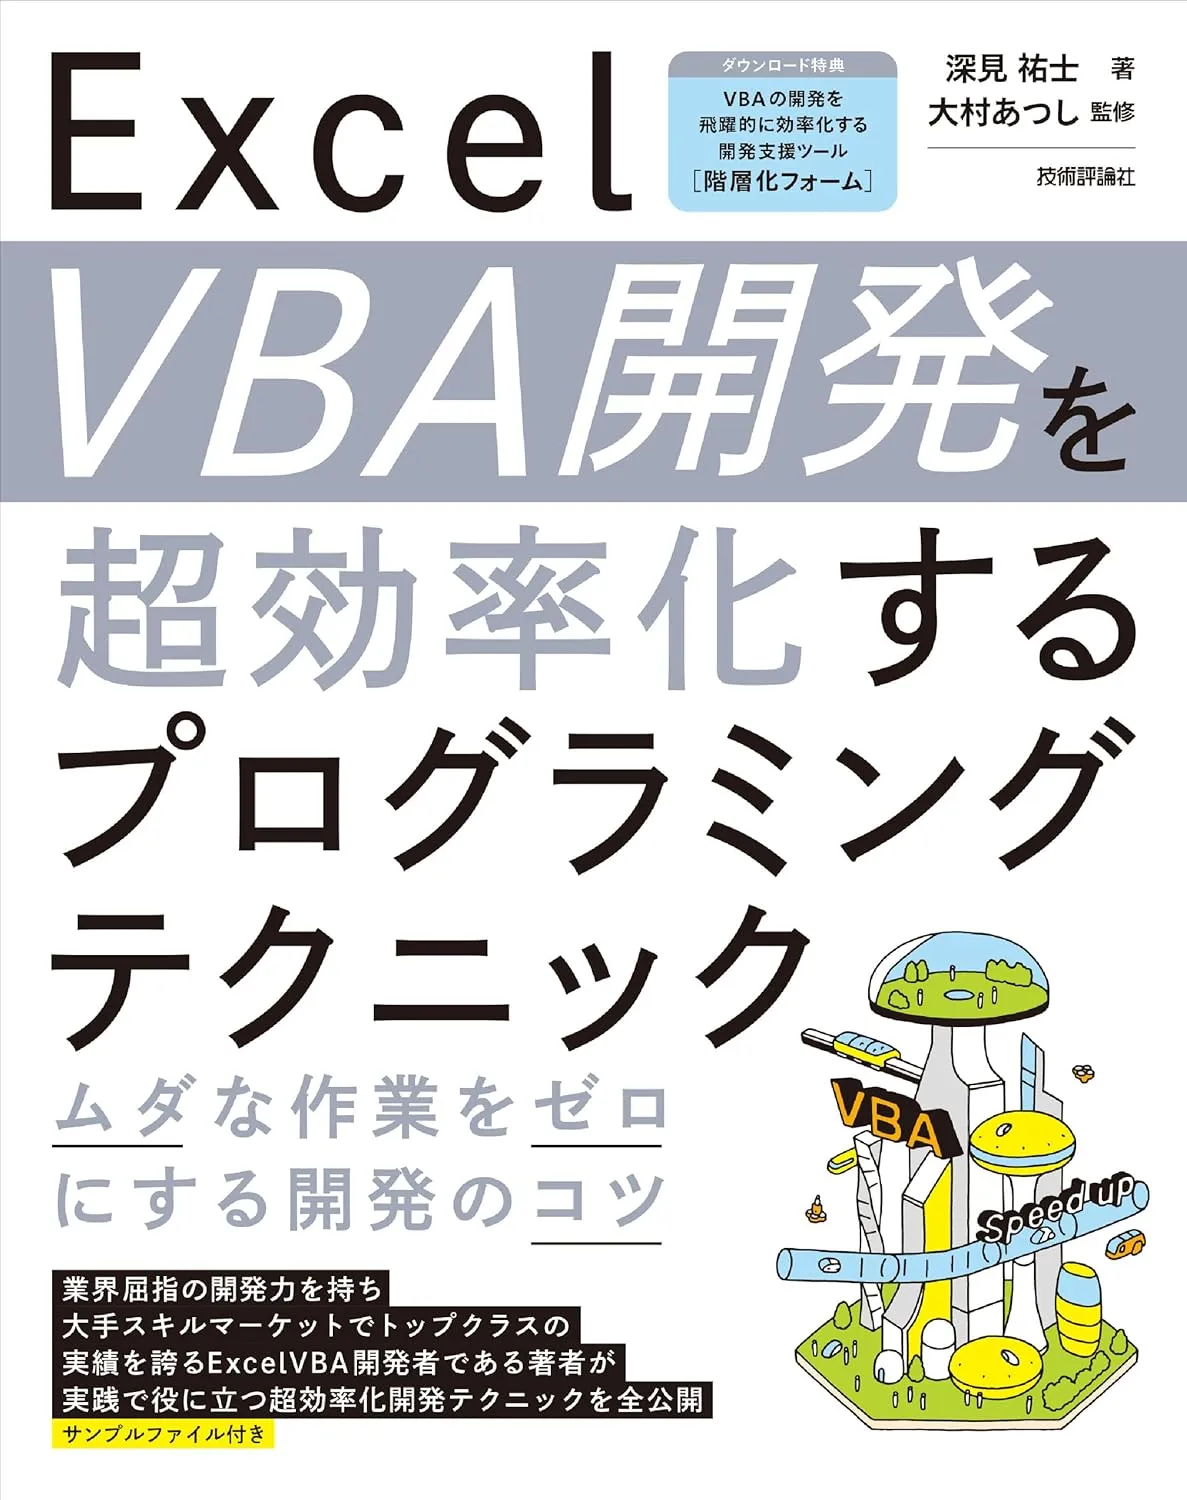 VBA book